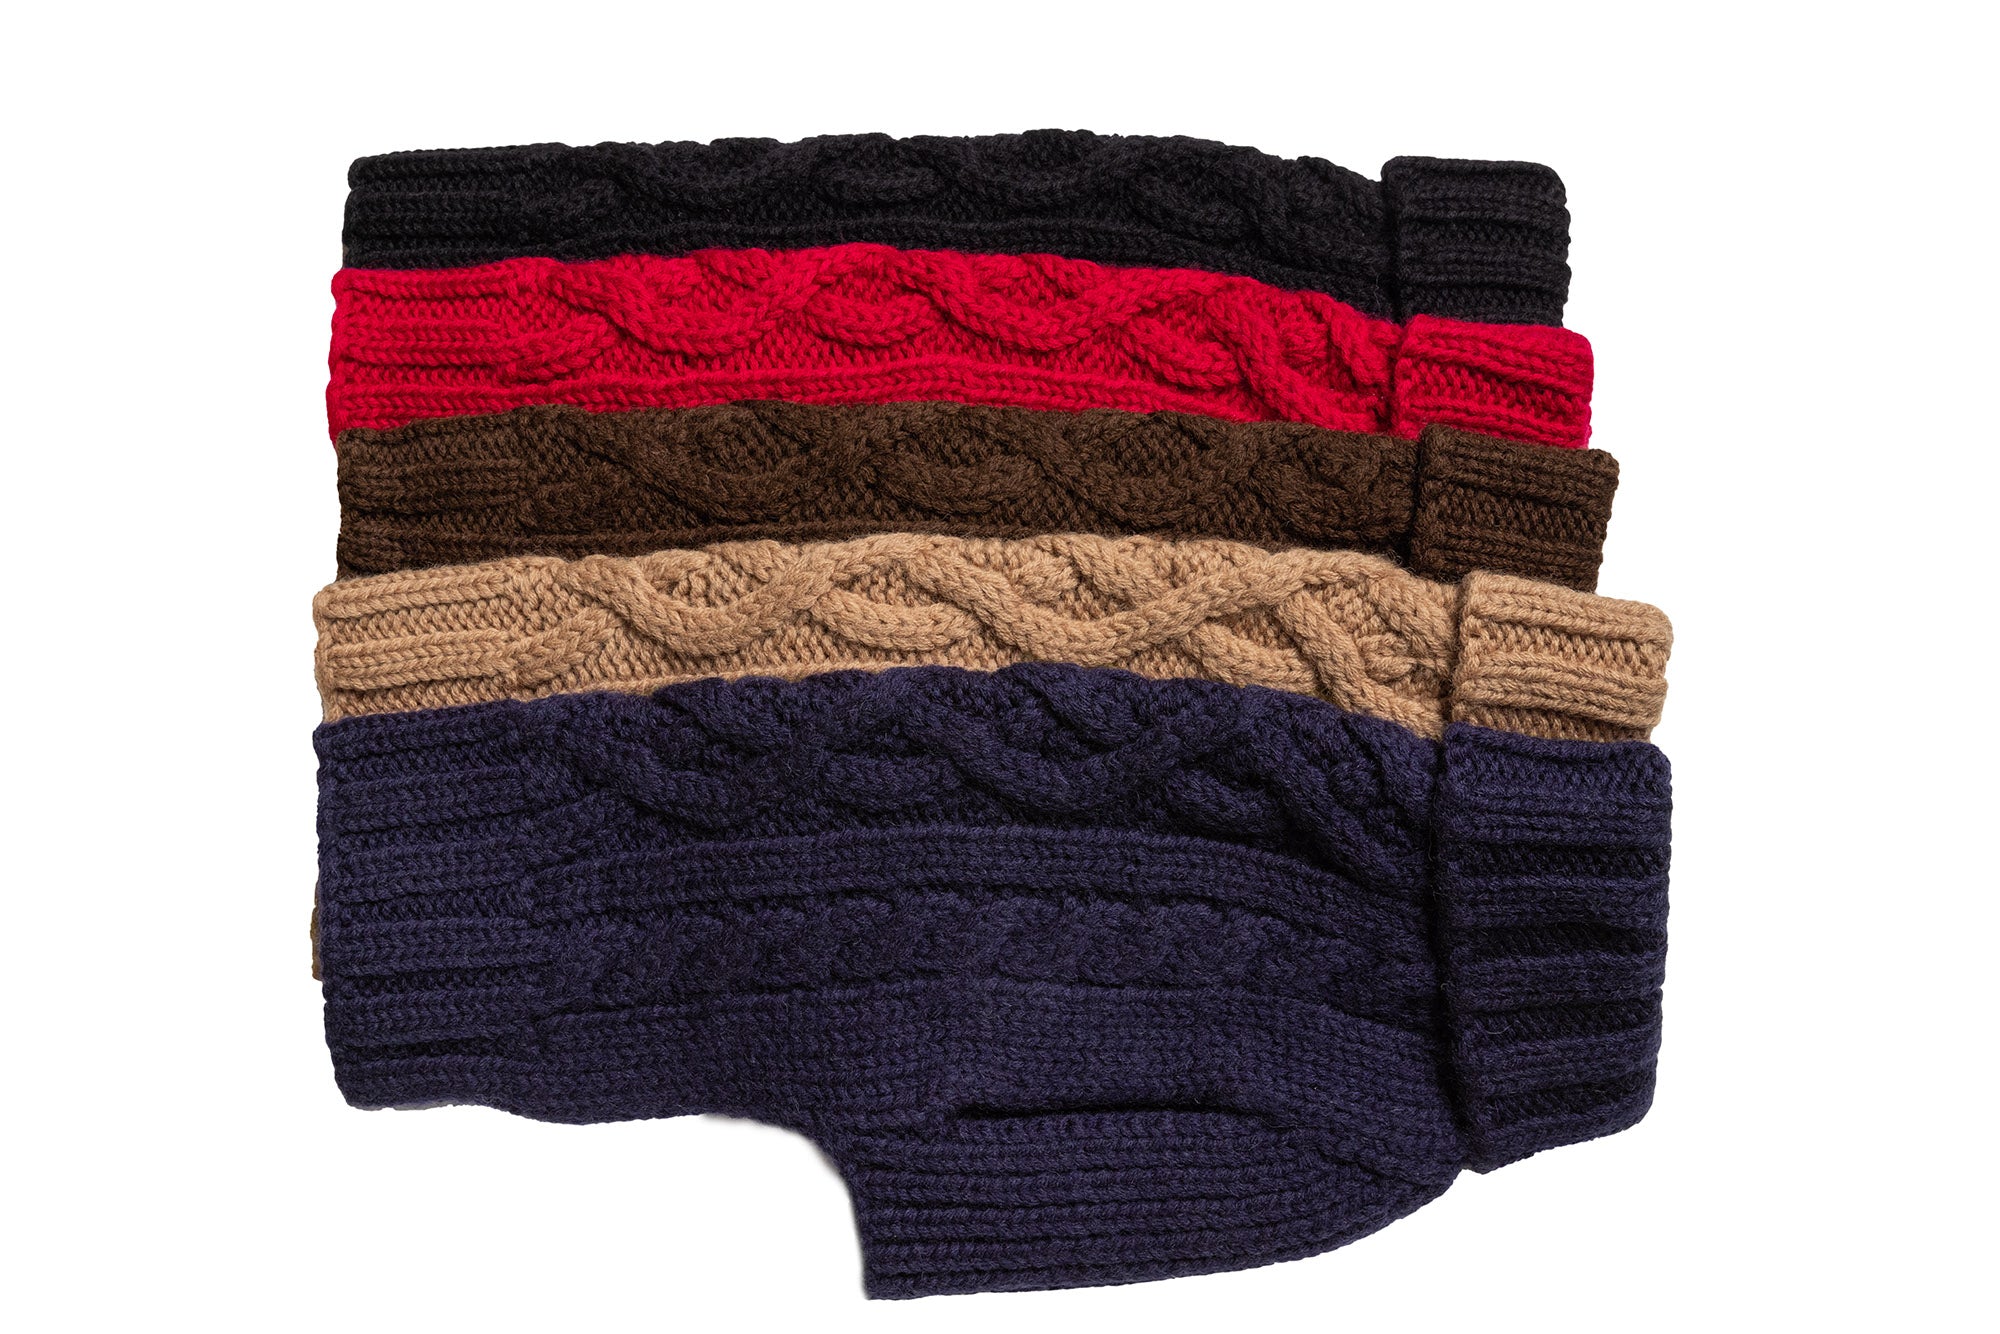 Hand knit NY Mets dog sweater size medium